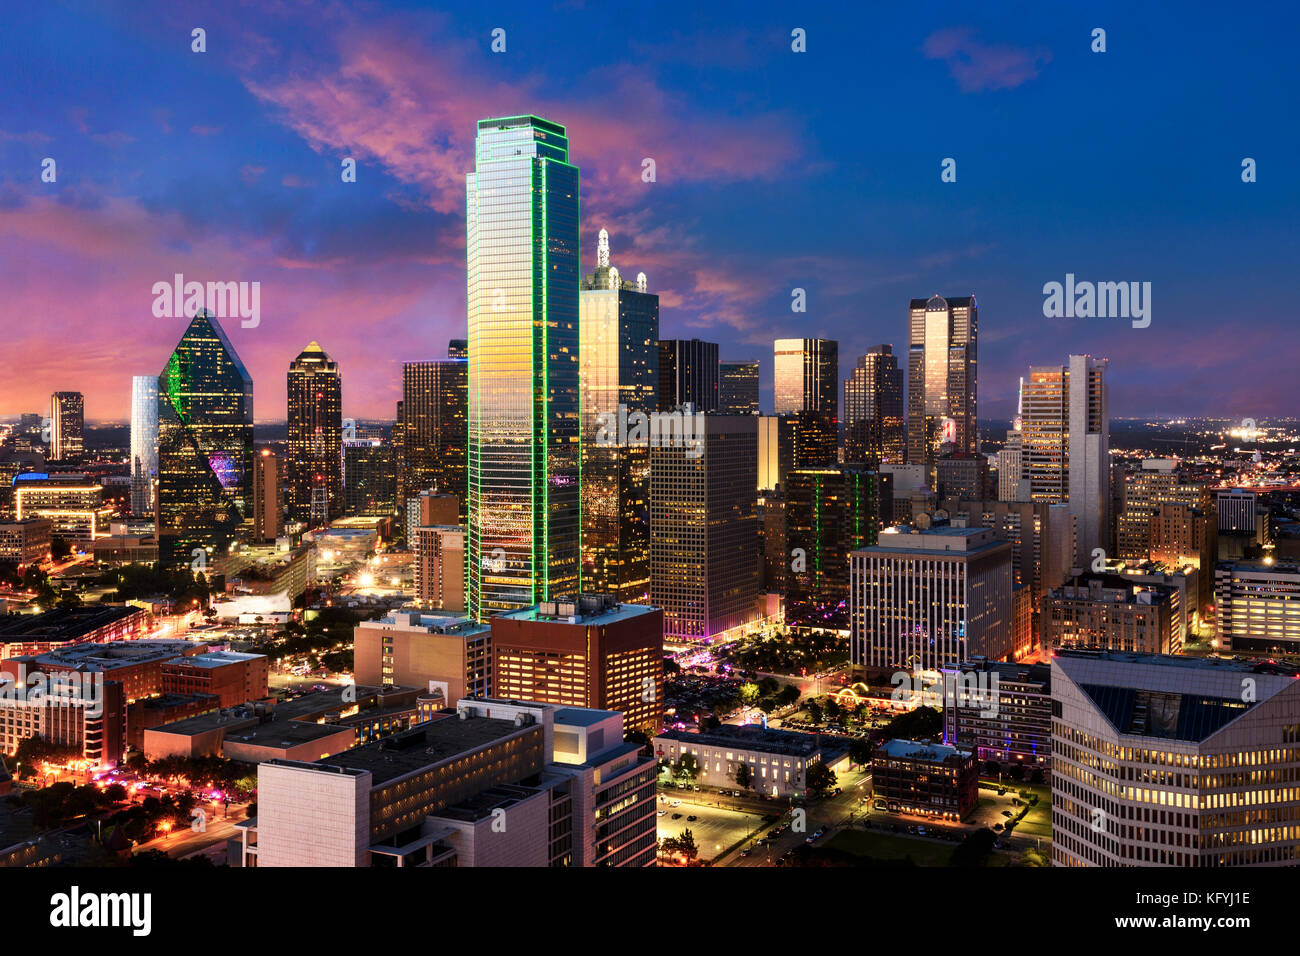 Skyline von Dallas, Texas. Blick von Reunion Tower in Downtown. schöne Szene nach Sonnenuntergang der kommerziellen Zone. Stockfoto